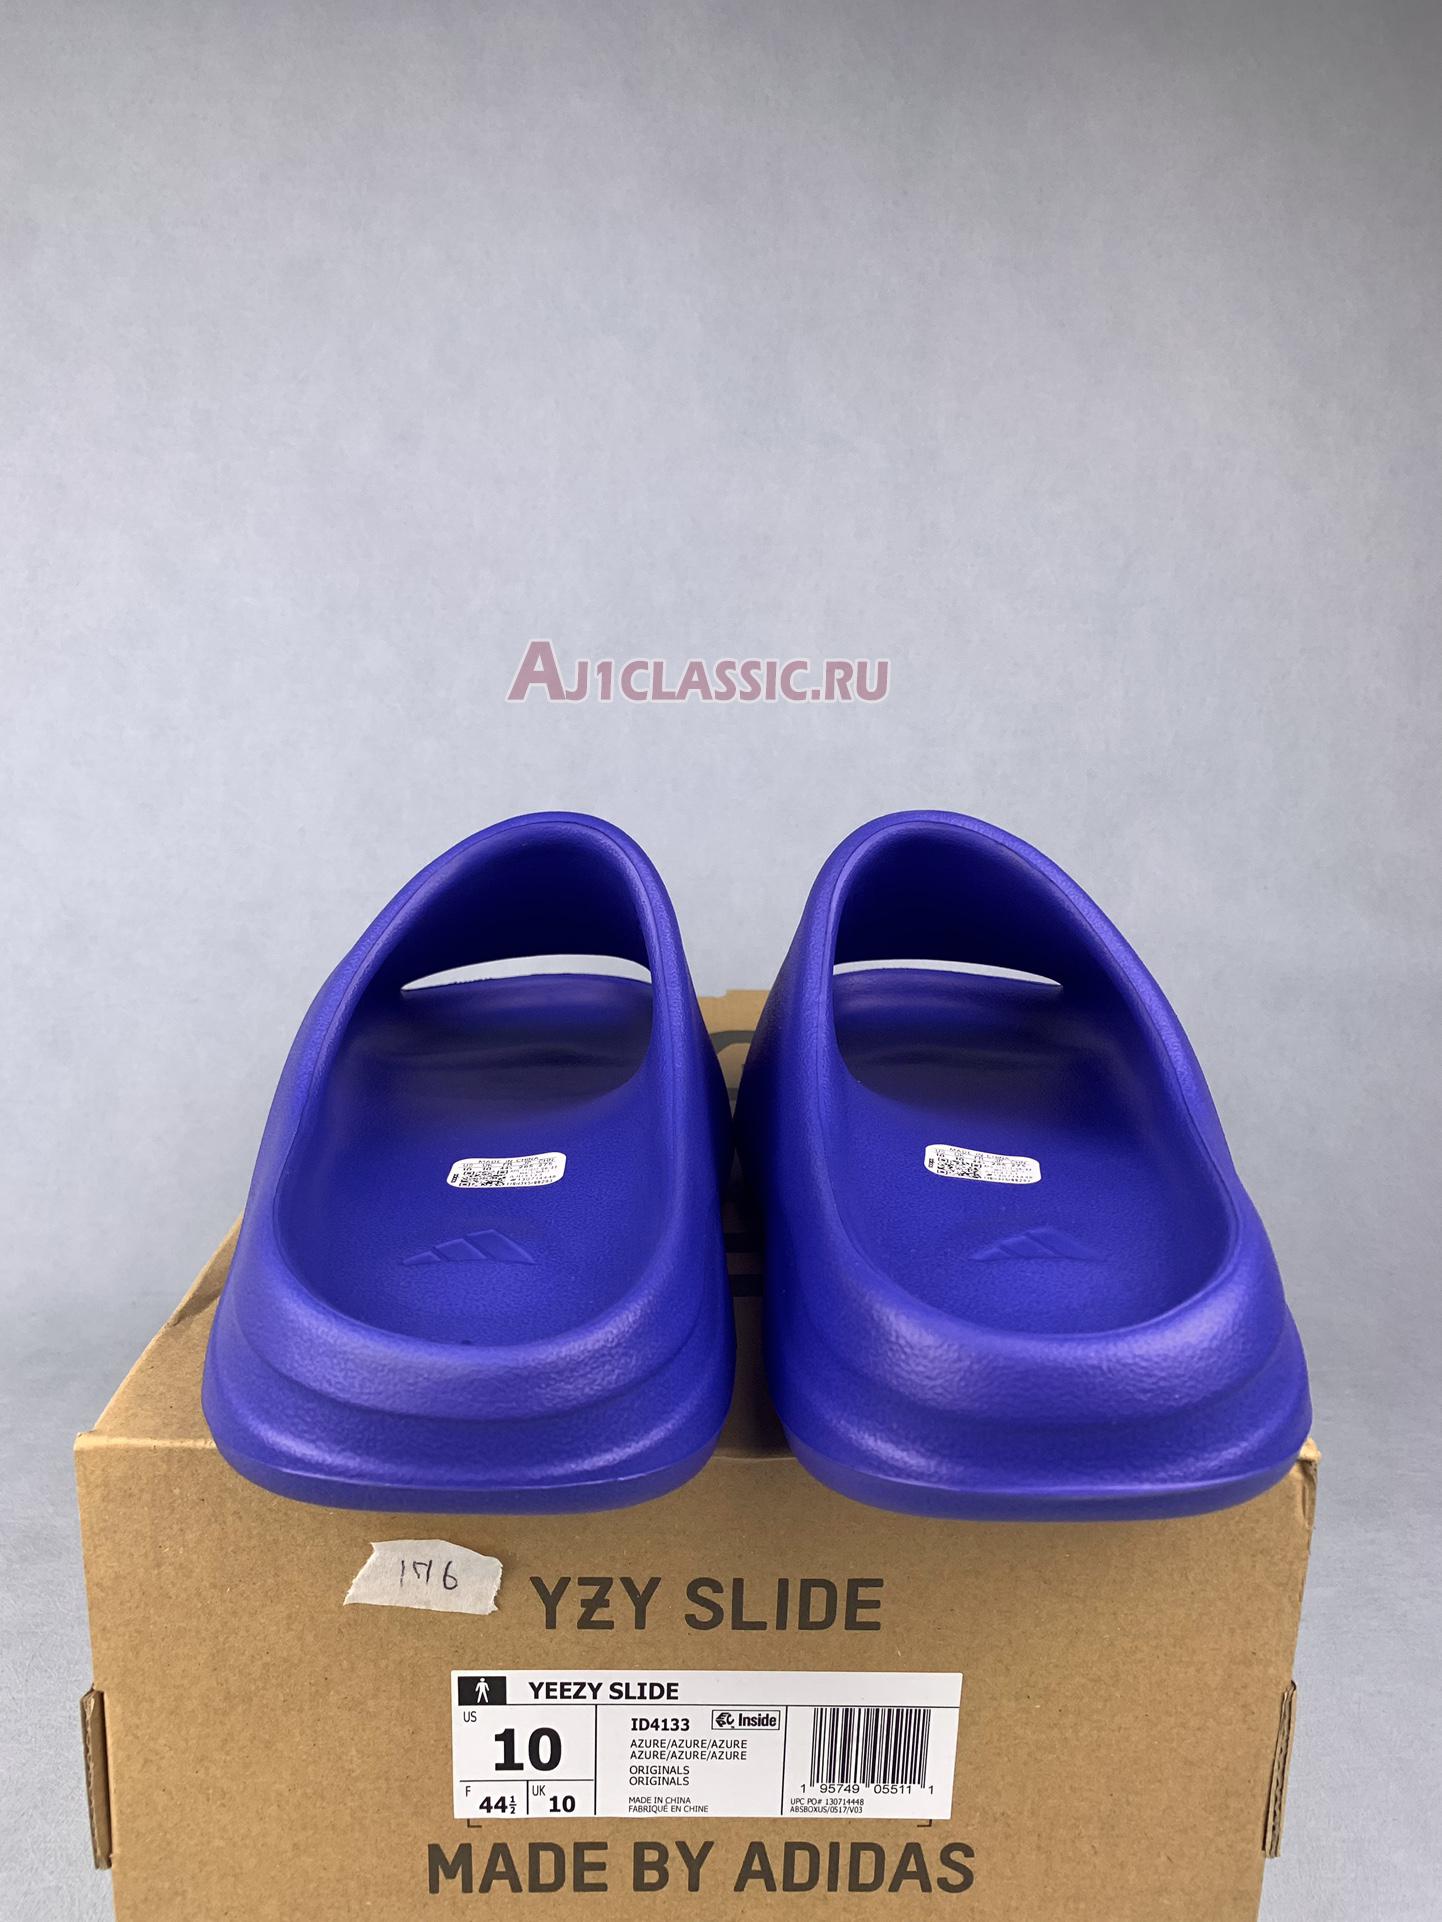 Adidas Yeezy Slide "Azure" ID4133